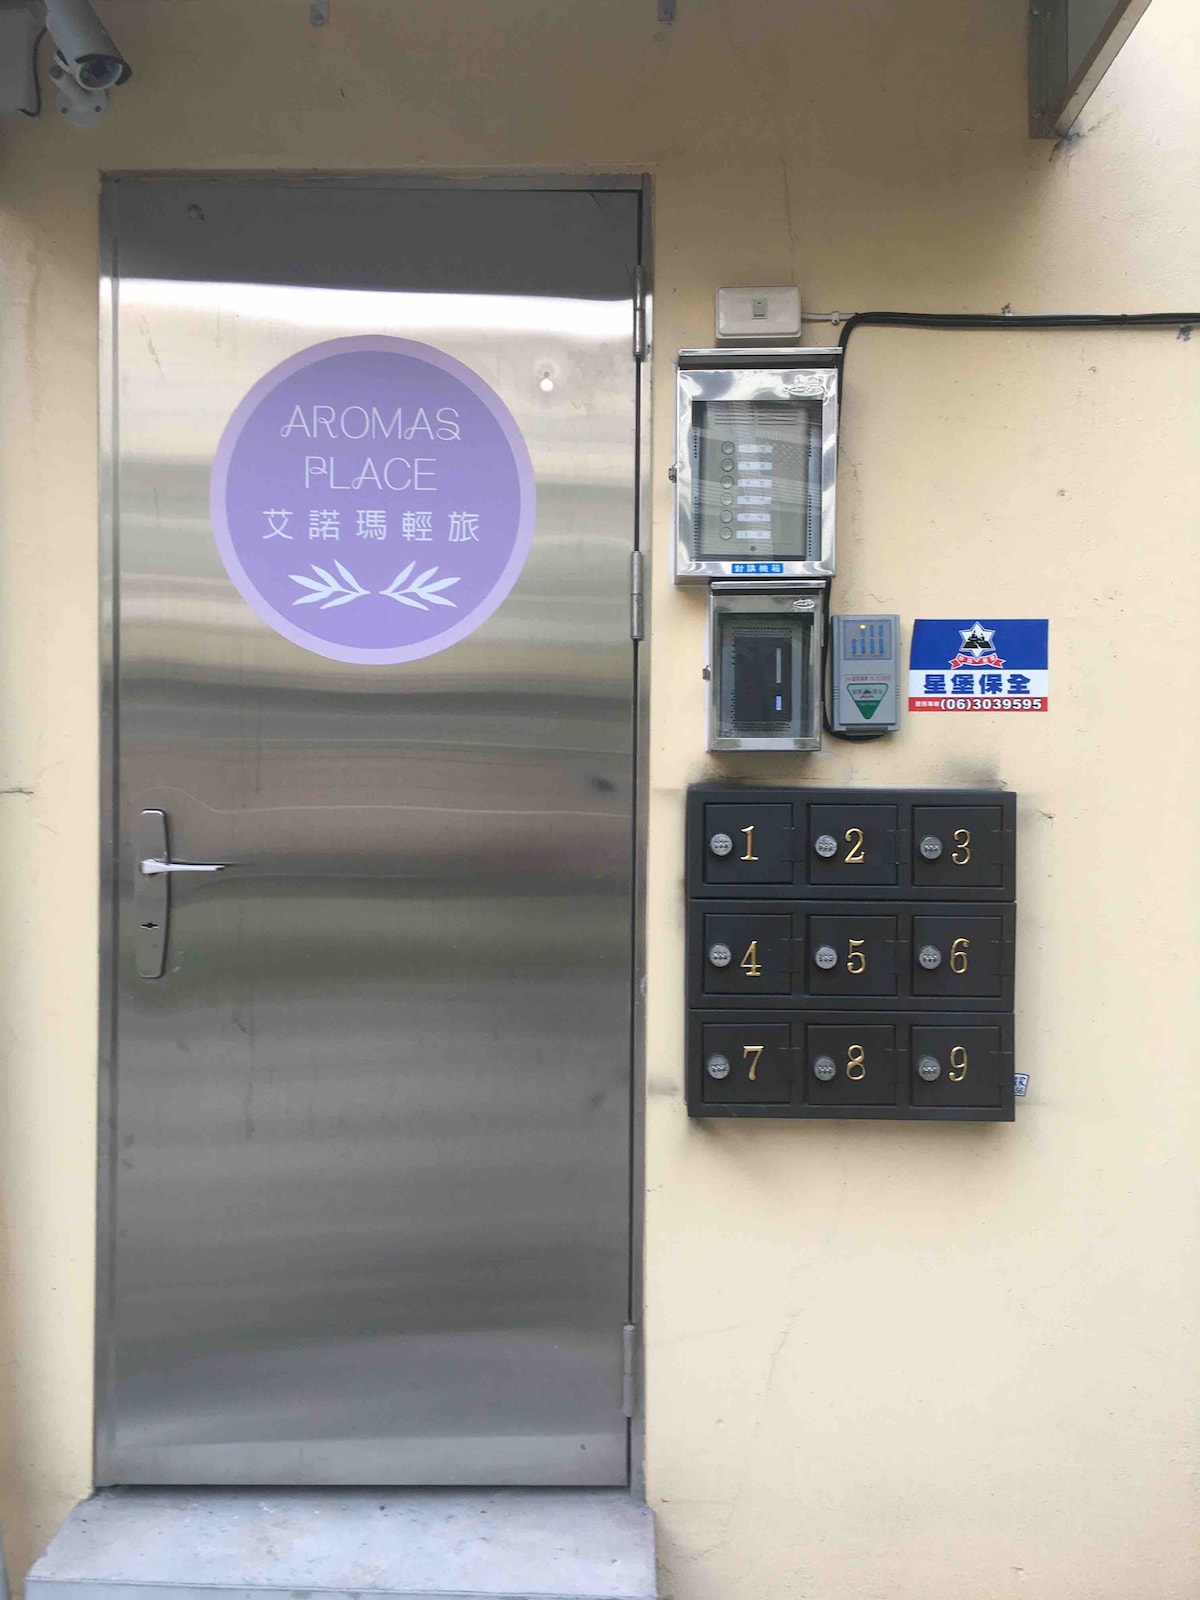 艾諾瑪輕旅《乳香房》 位於台南市東區，鄰近台南市火車後站&國立成功大學校區，生活機能方便。